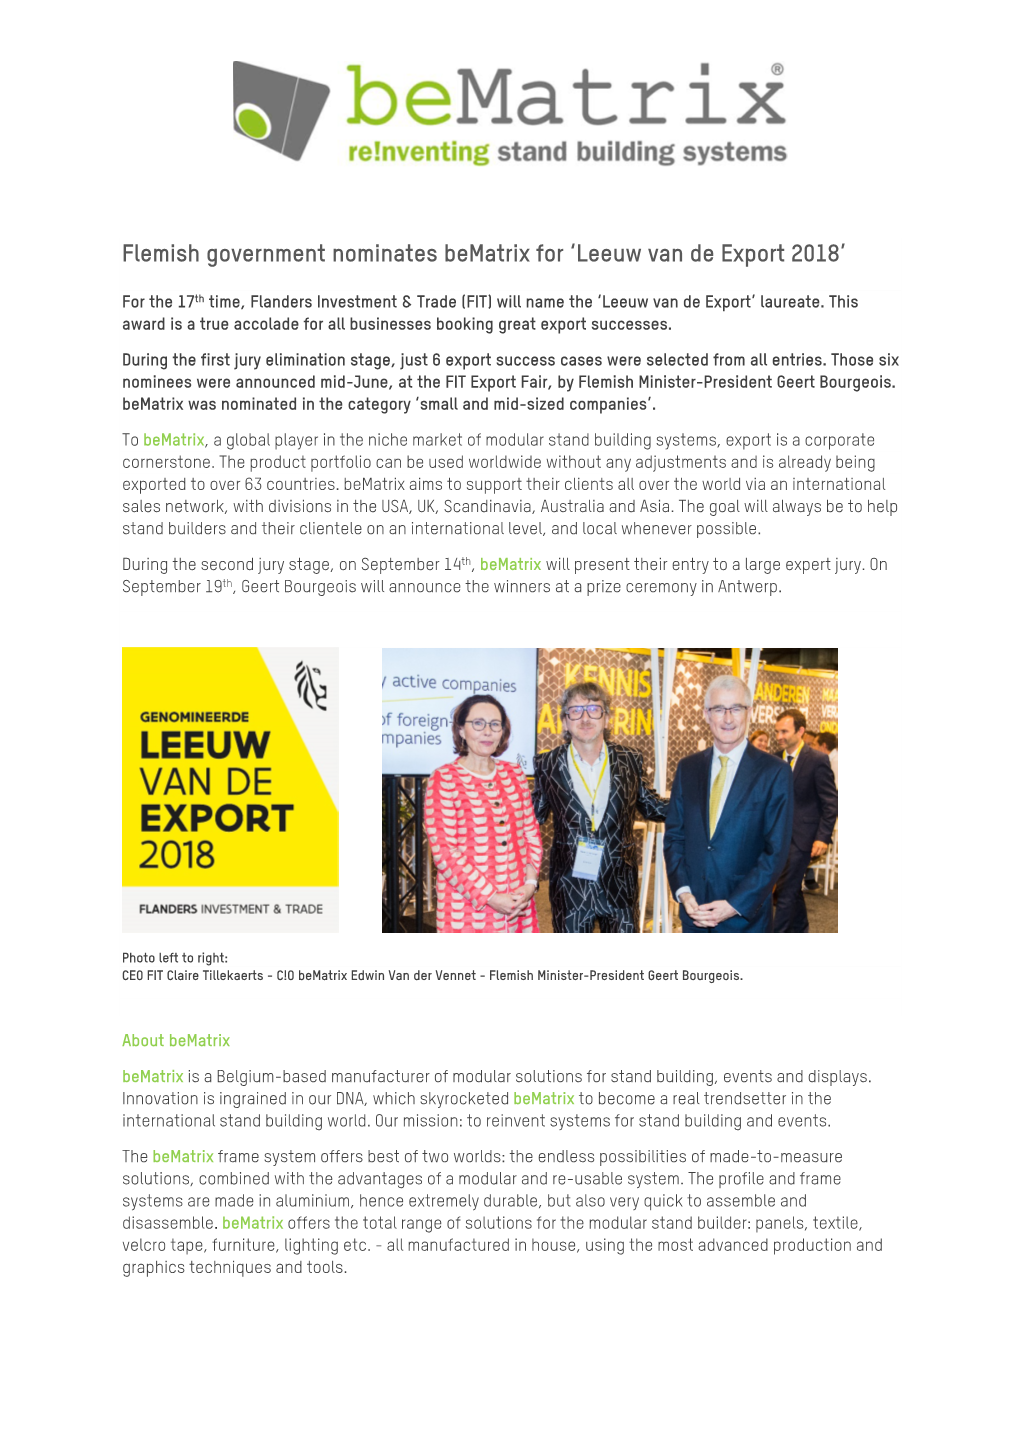 Flemish Government Nominates Bematrix for 'Leeuw Van De Export